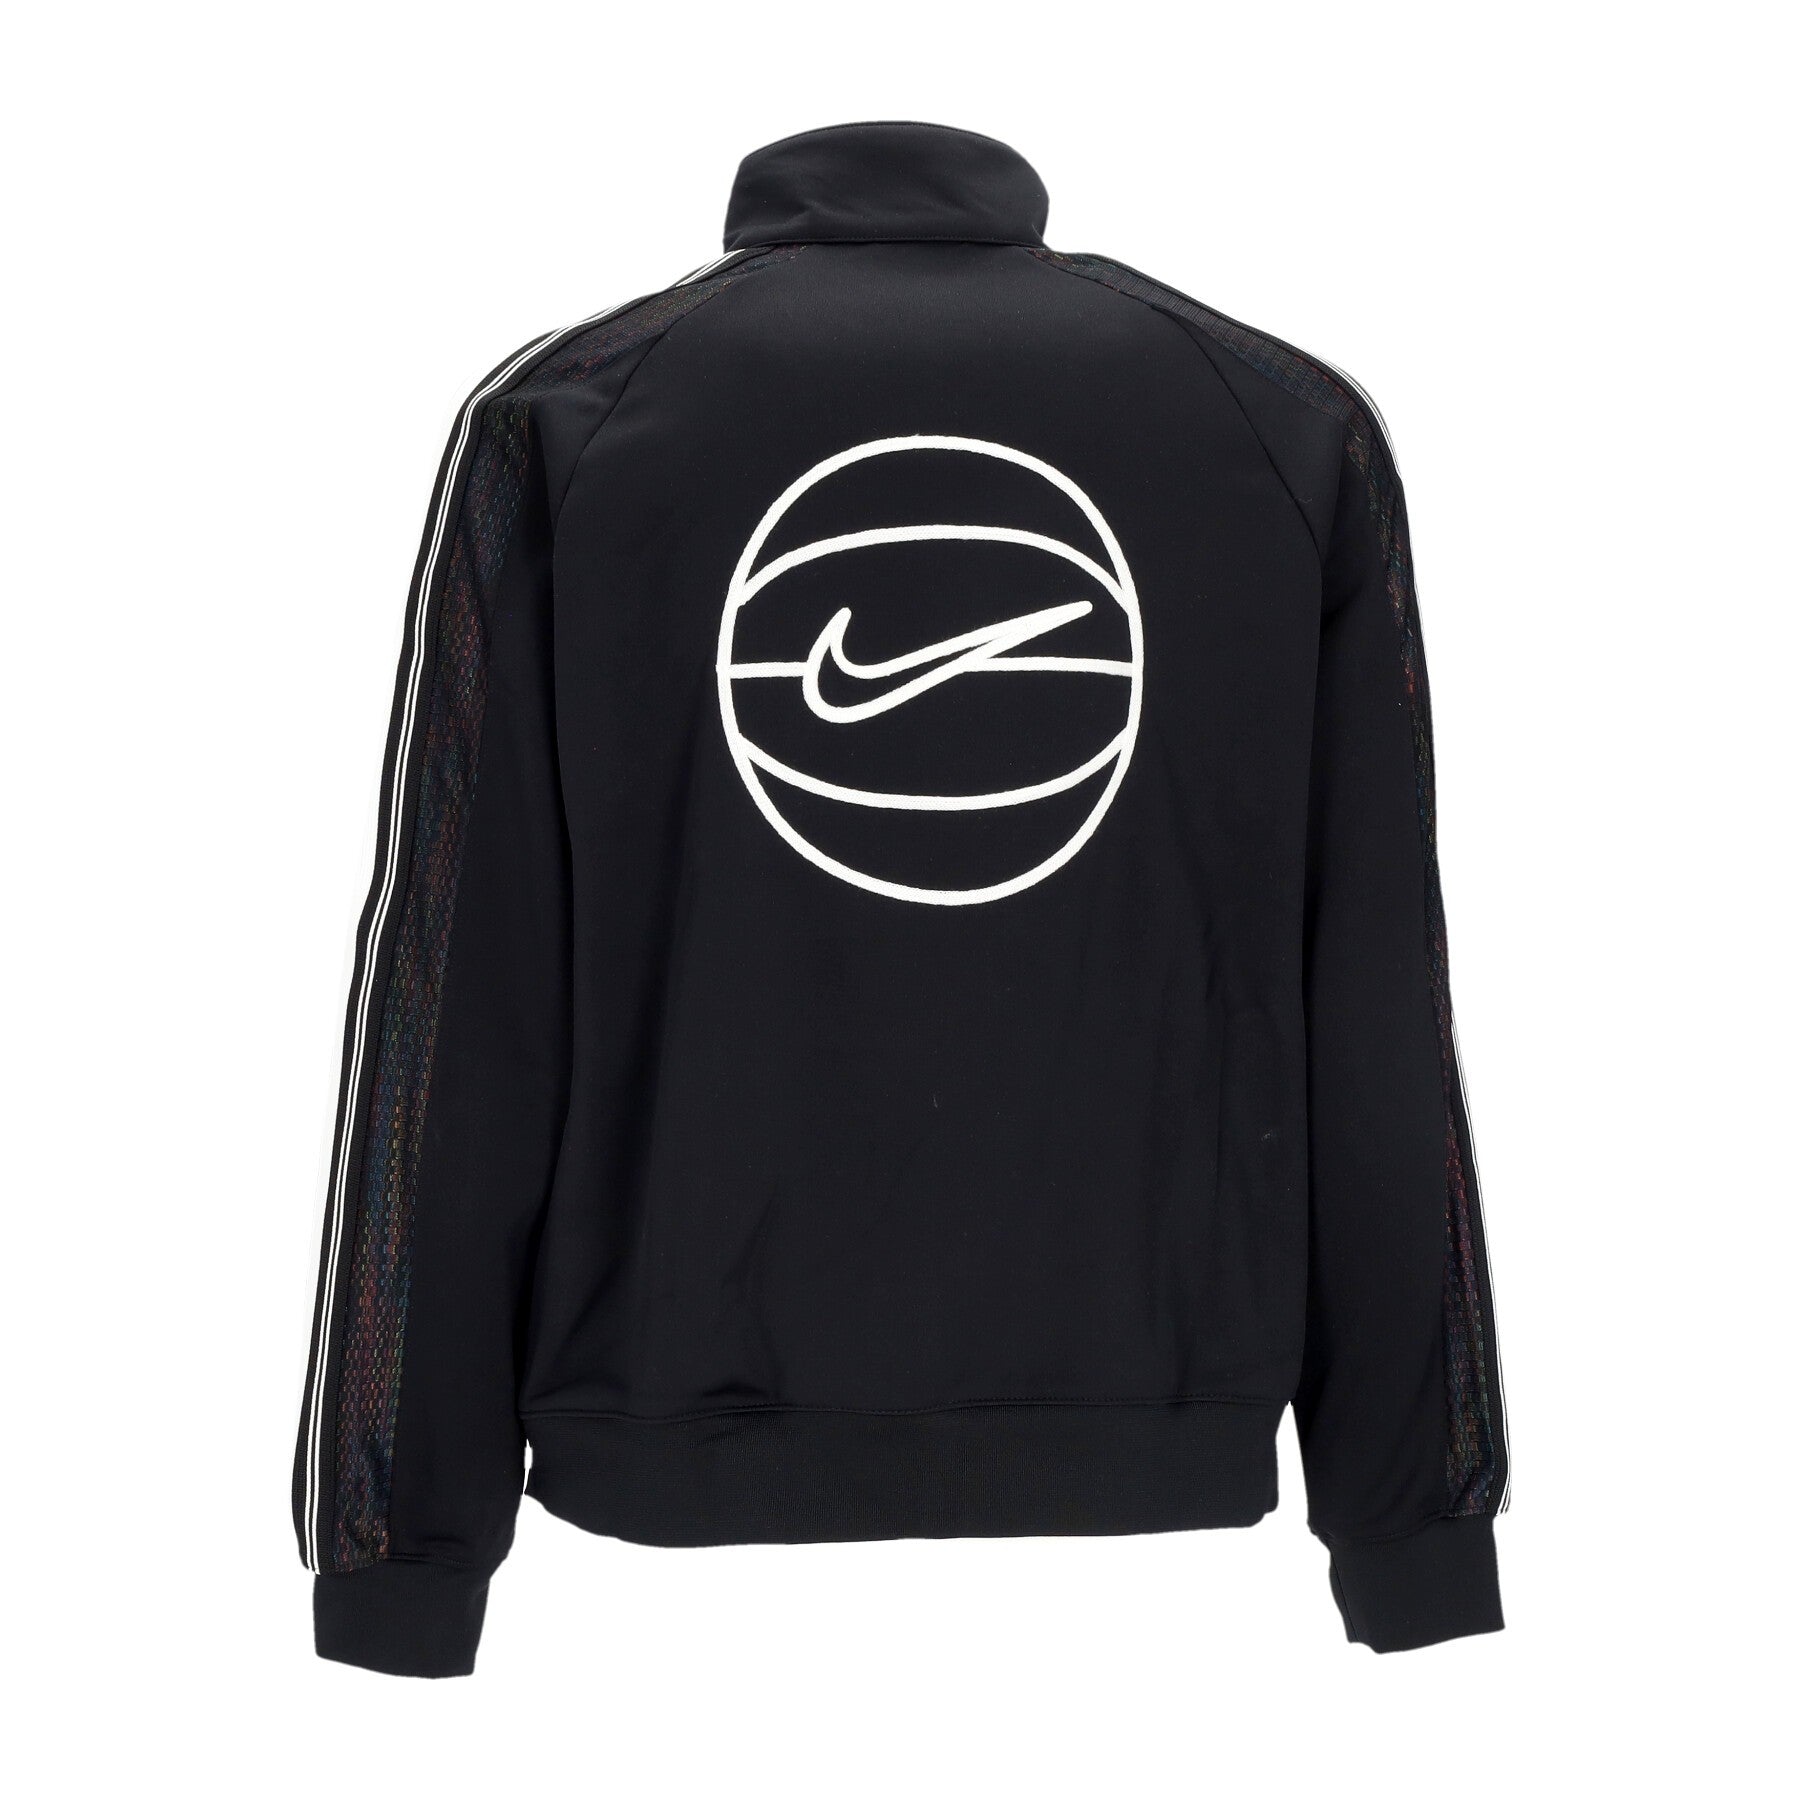 Nike, Giacca Tuta Uomo Lwt Full-zip Jacket Naos, Black/white